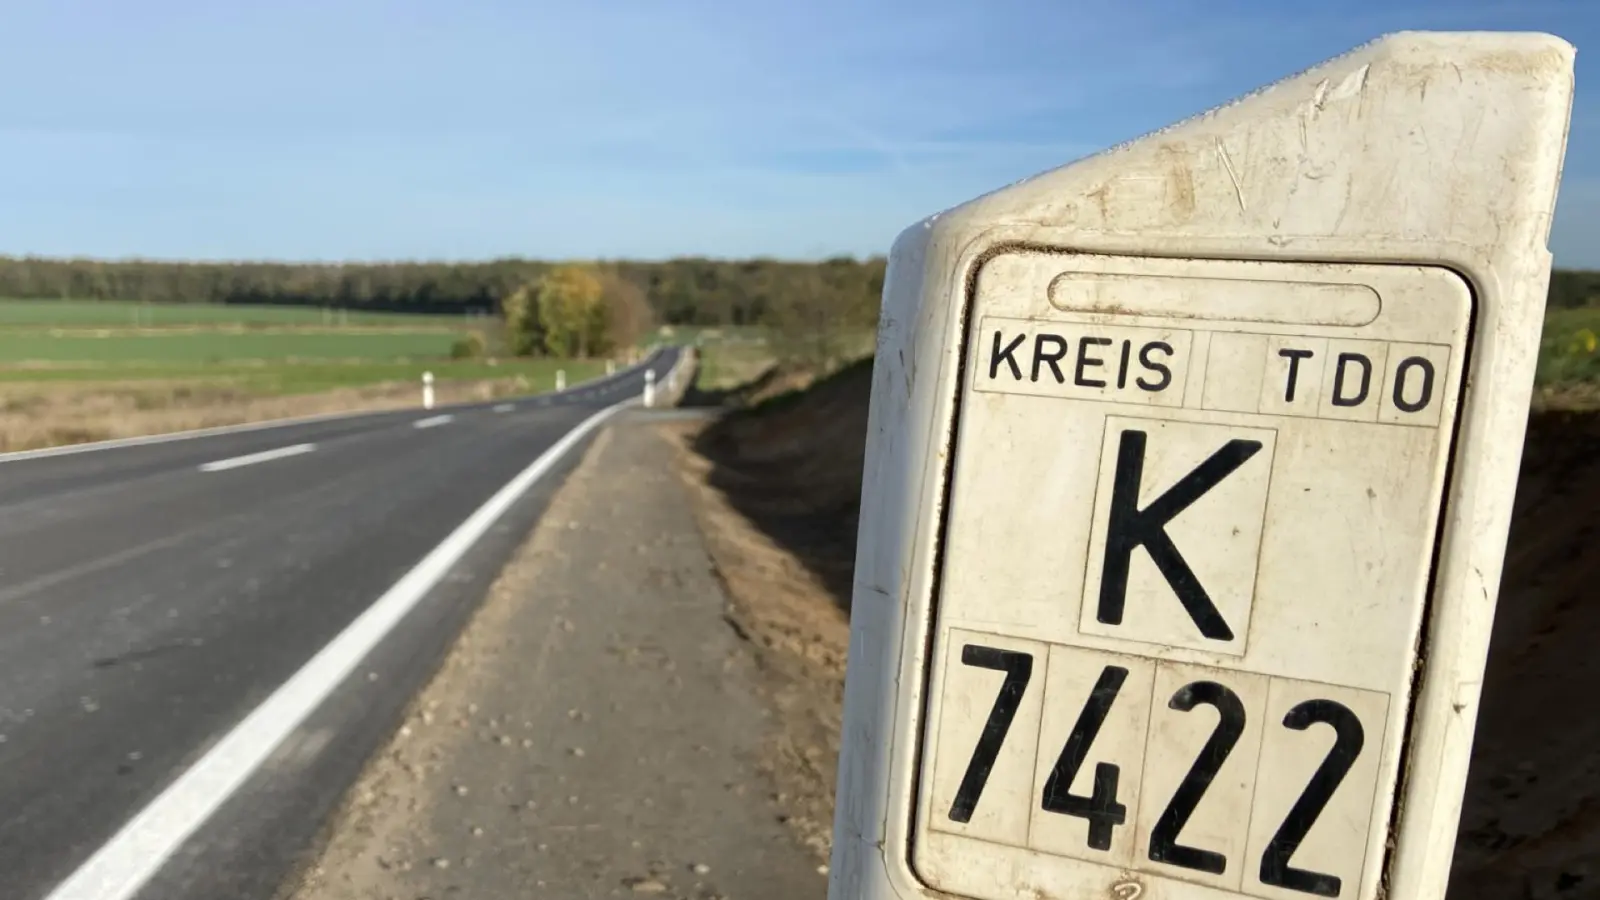 Fertig, aber noch nicht freigegeben: Die K7422 zwischen Taucha und Pönitz. (Foto: taucha-kompakt.de)